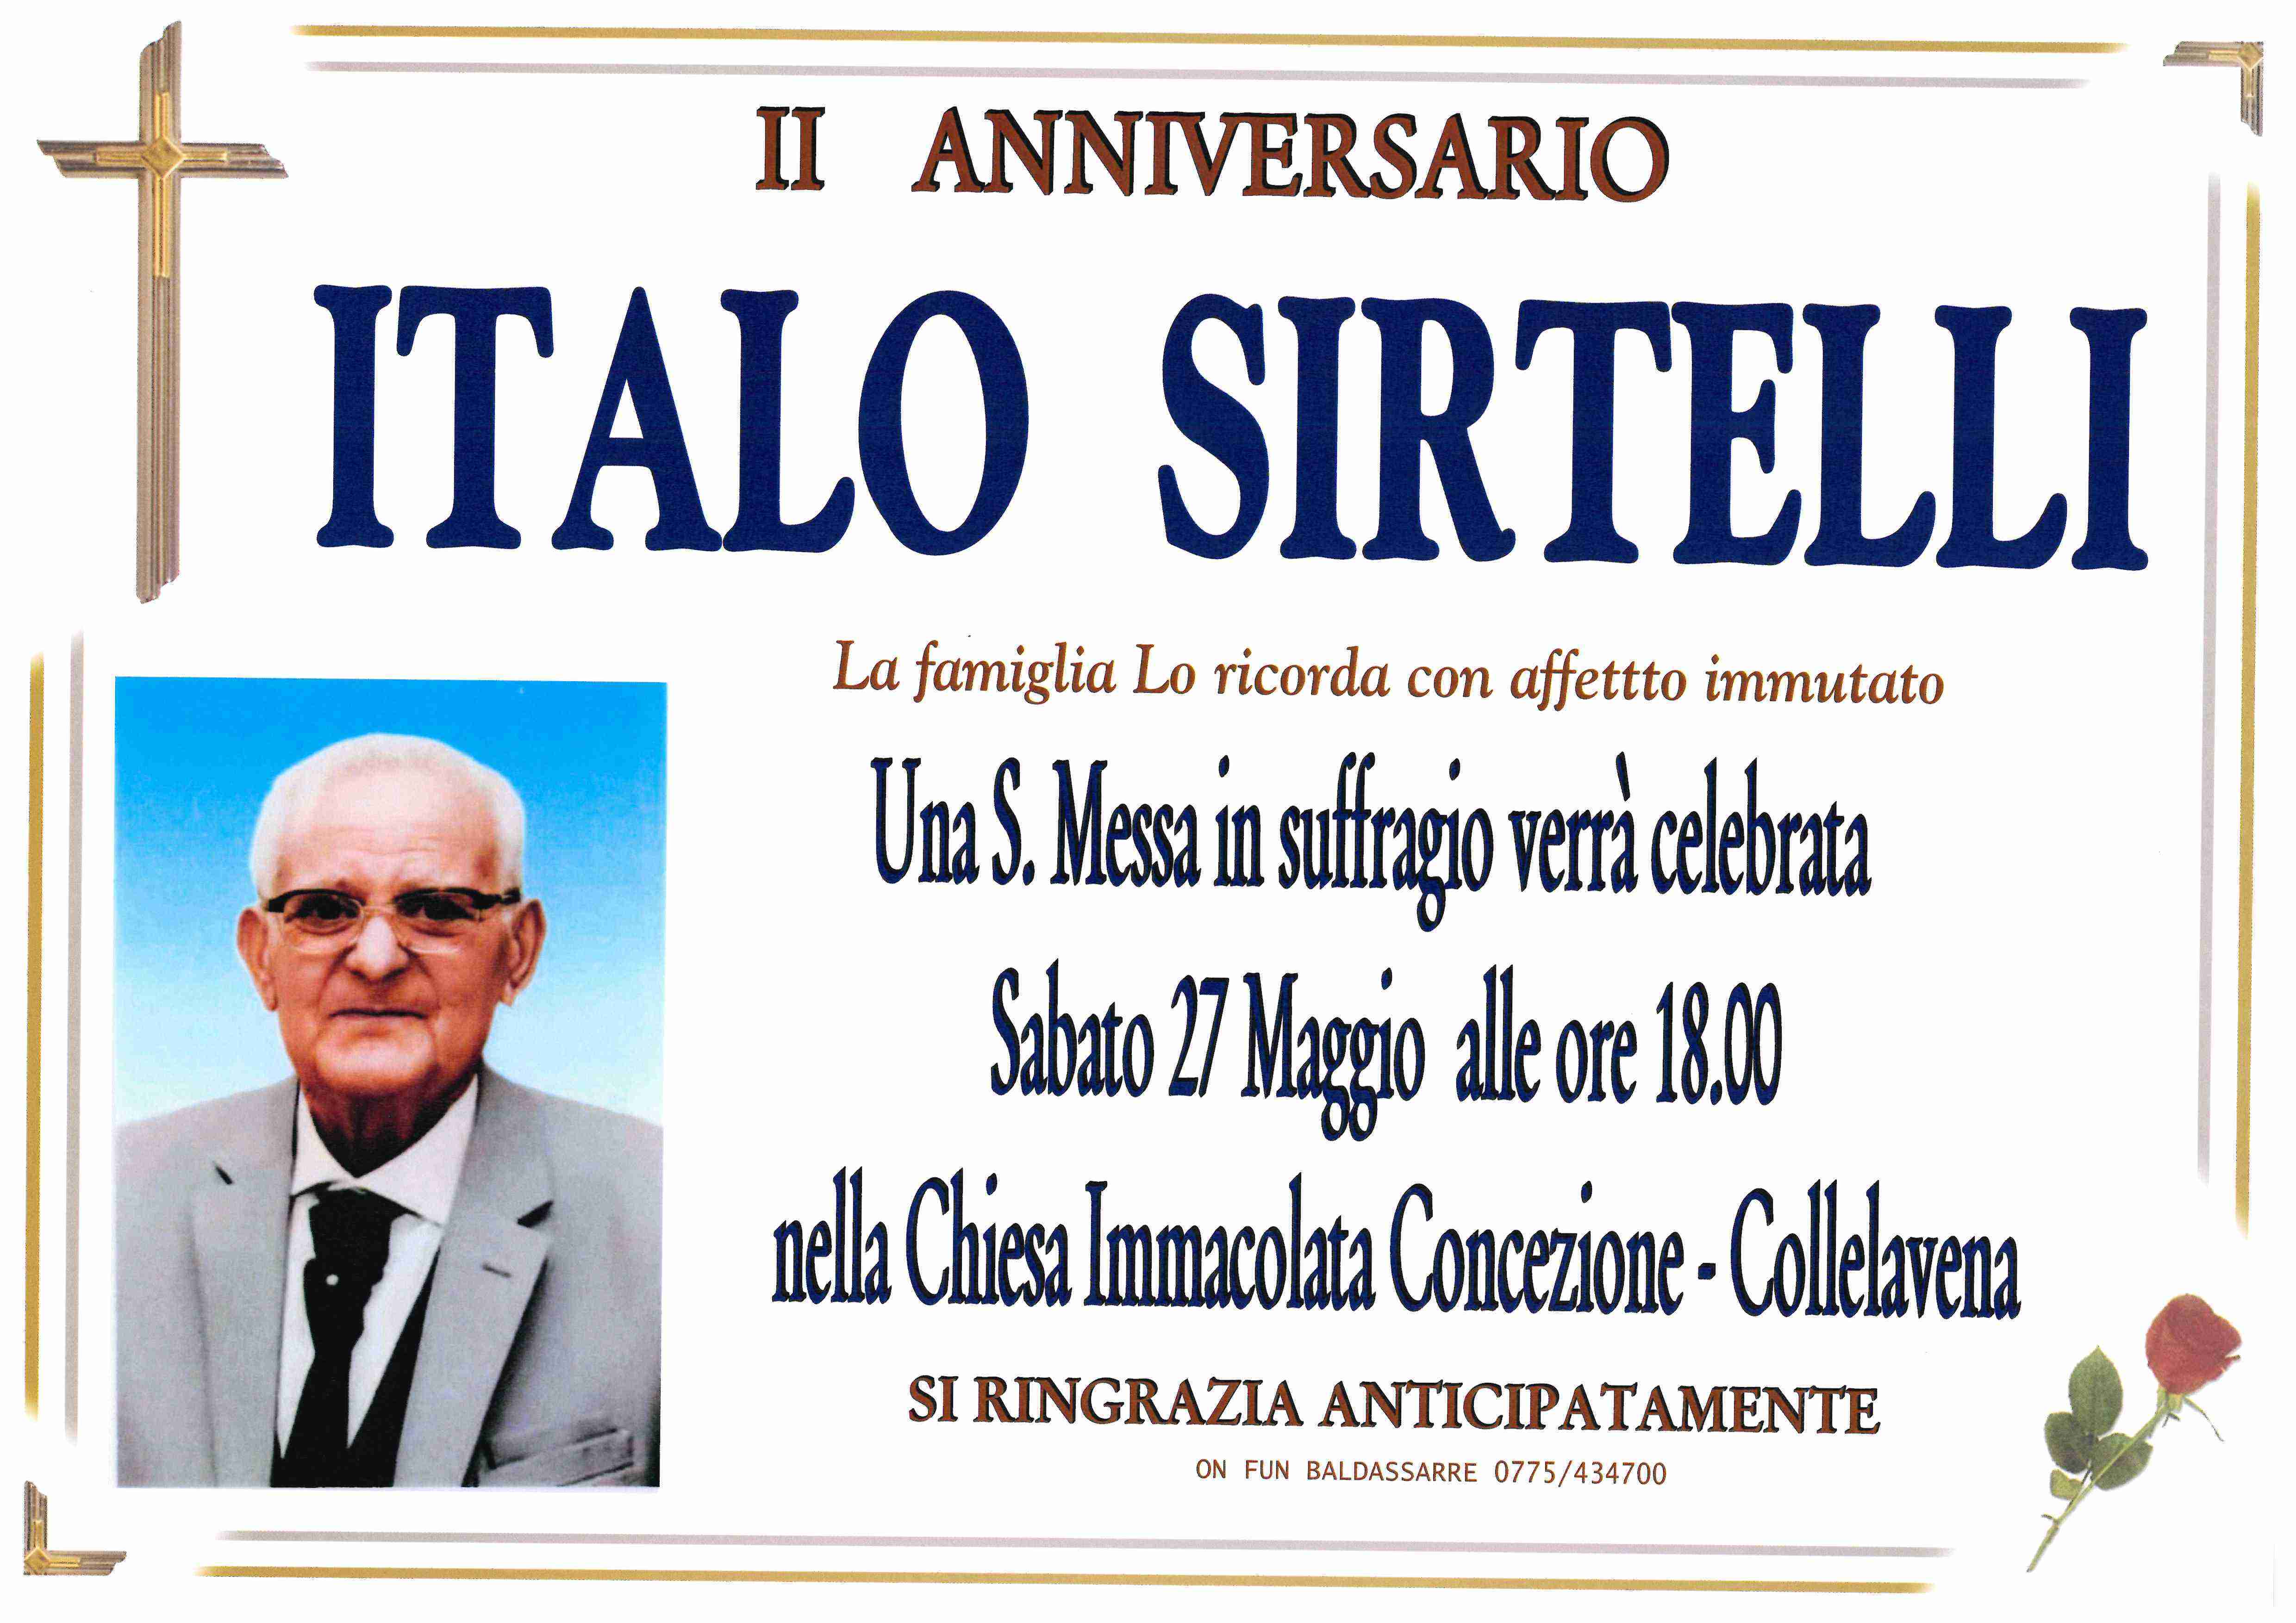 Italo Sirtelli